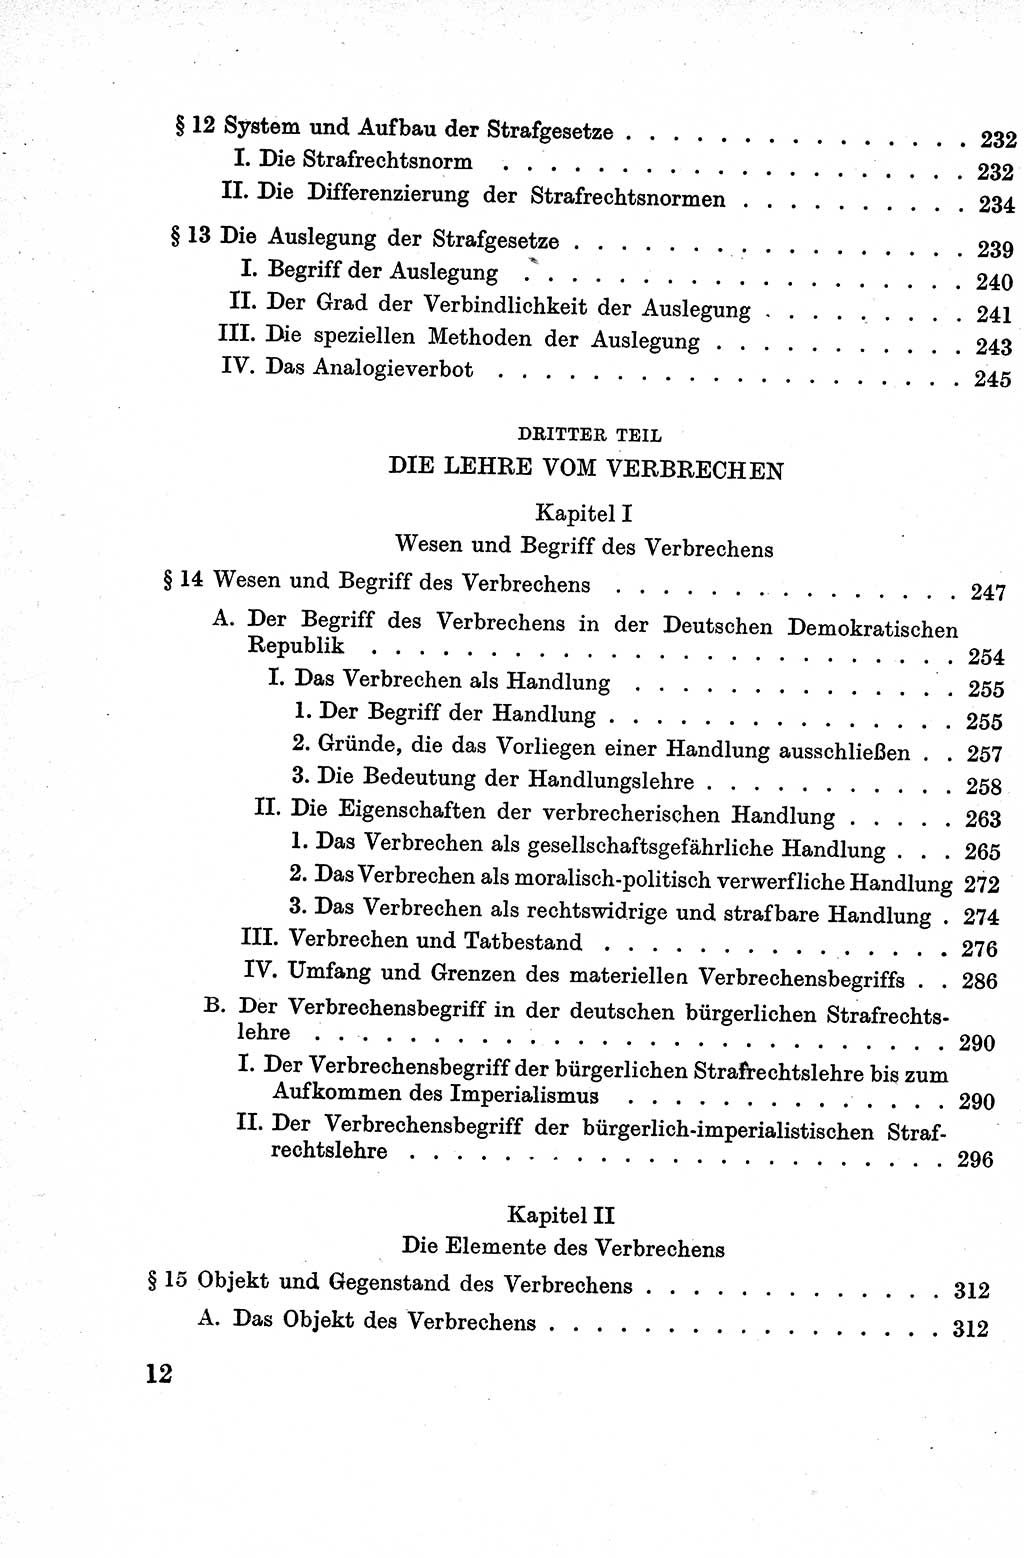 Lehrbuch des Strafrechts der Deutschen Demokratischen Republik (DDR), Allgemeiner Teil 1959, Seite 12 (Lb. Strafr. DDR AT 1959, S. 12)